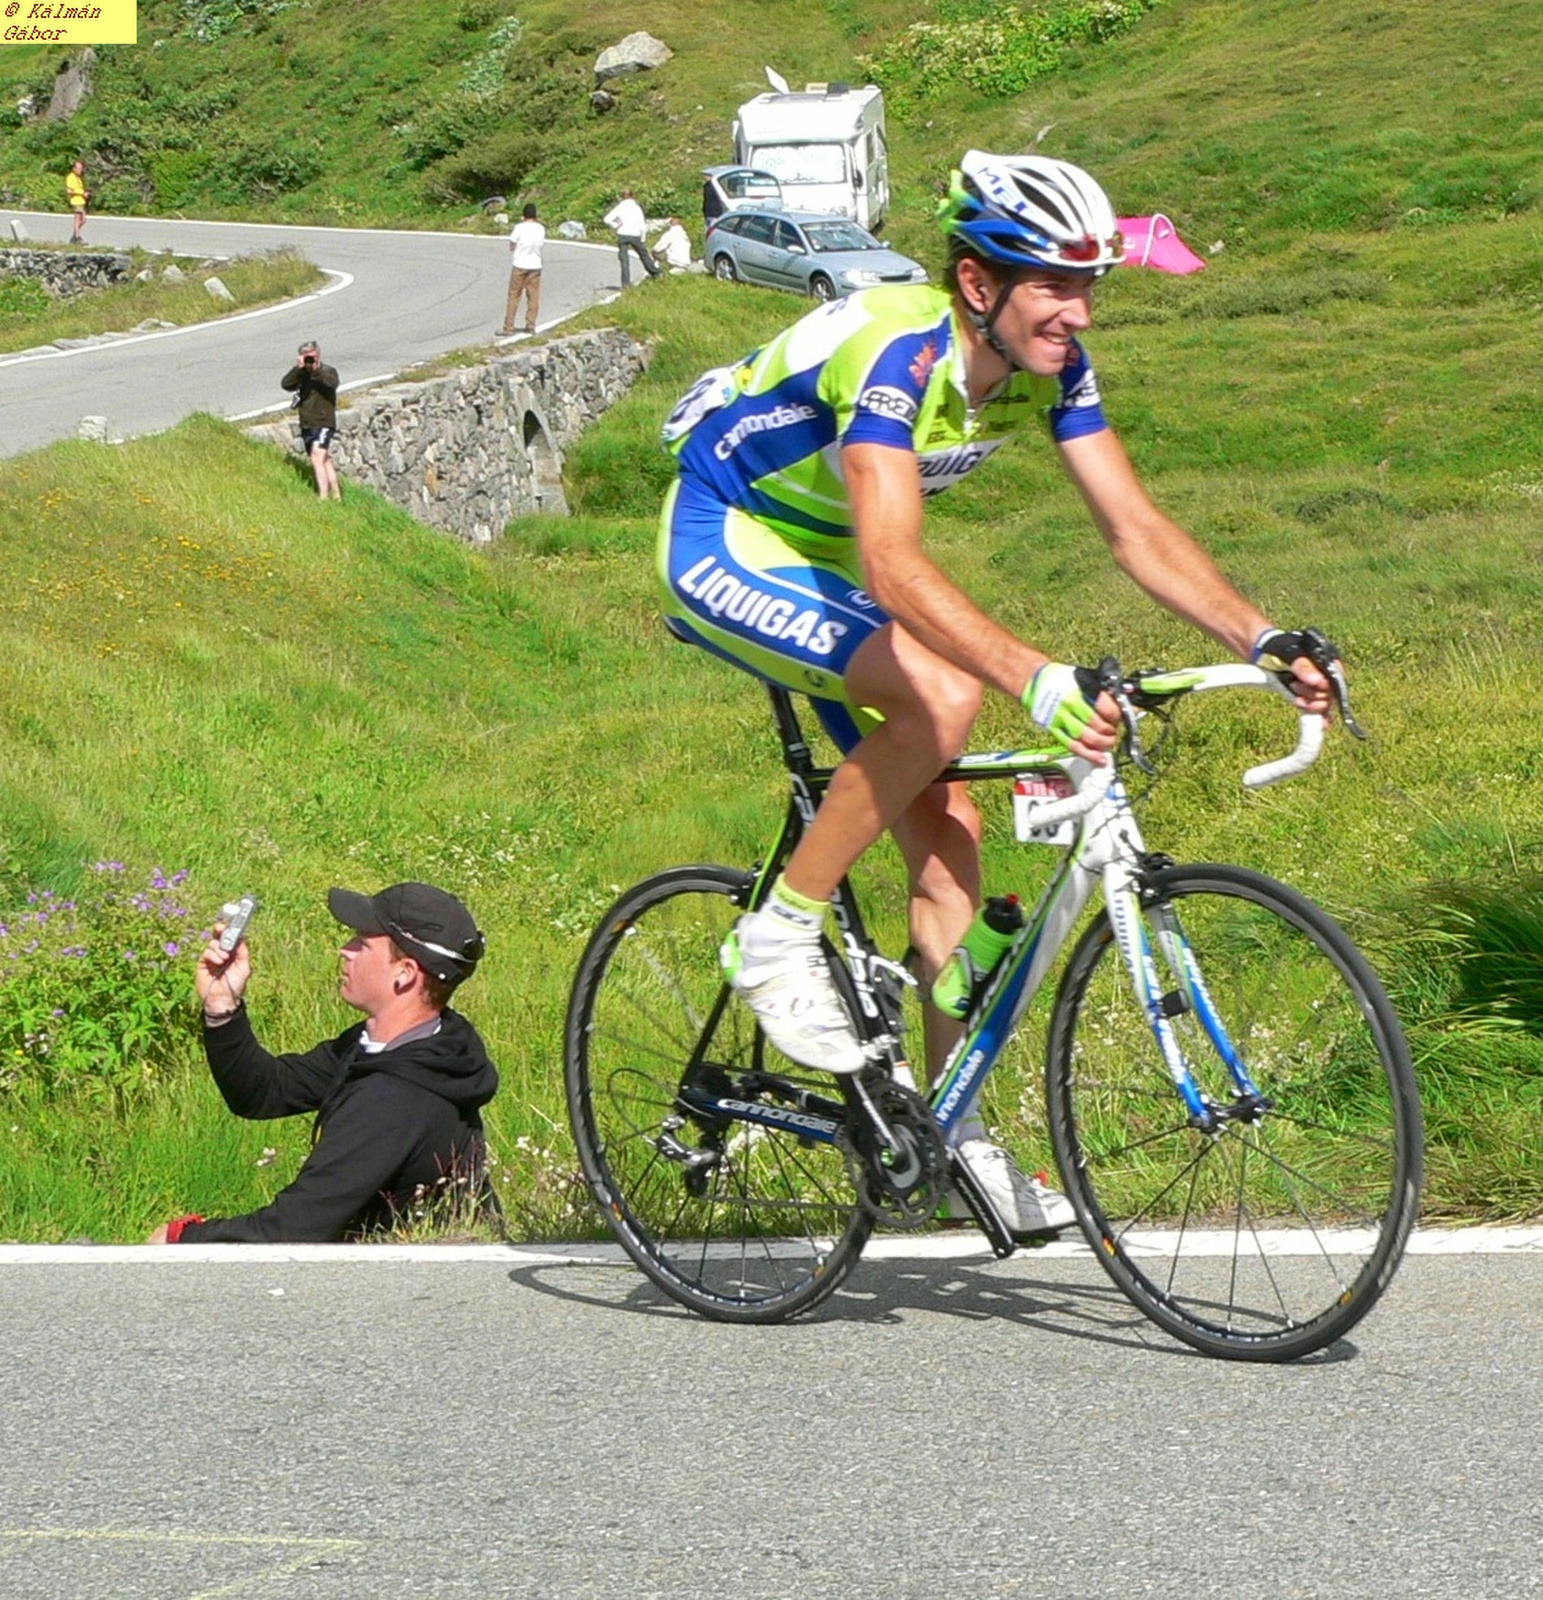 163 - Tour de France- Vanotti